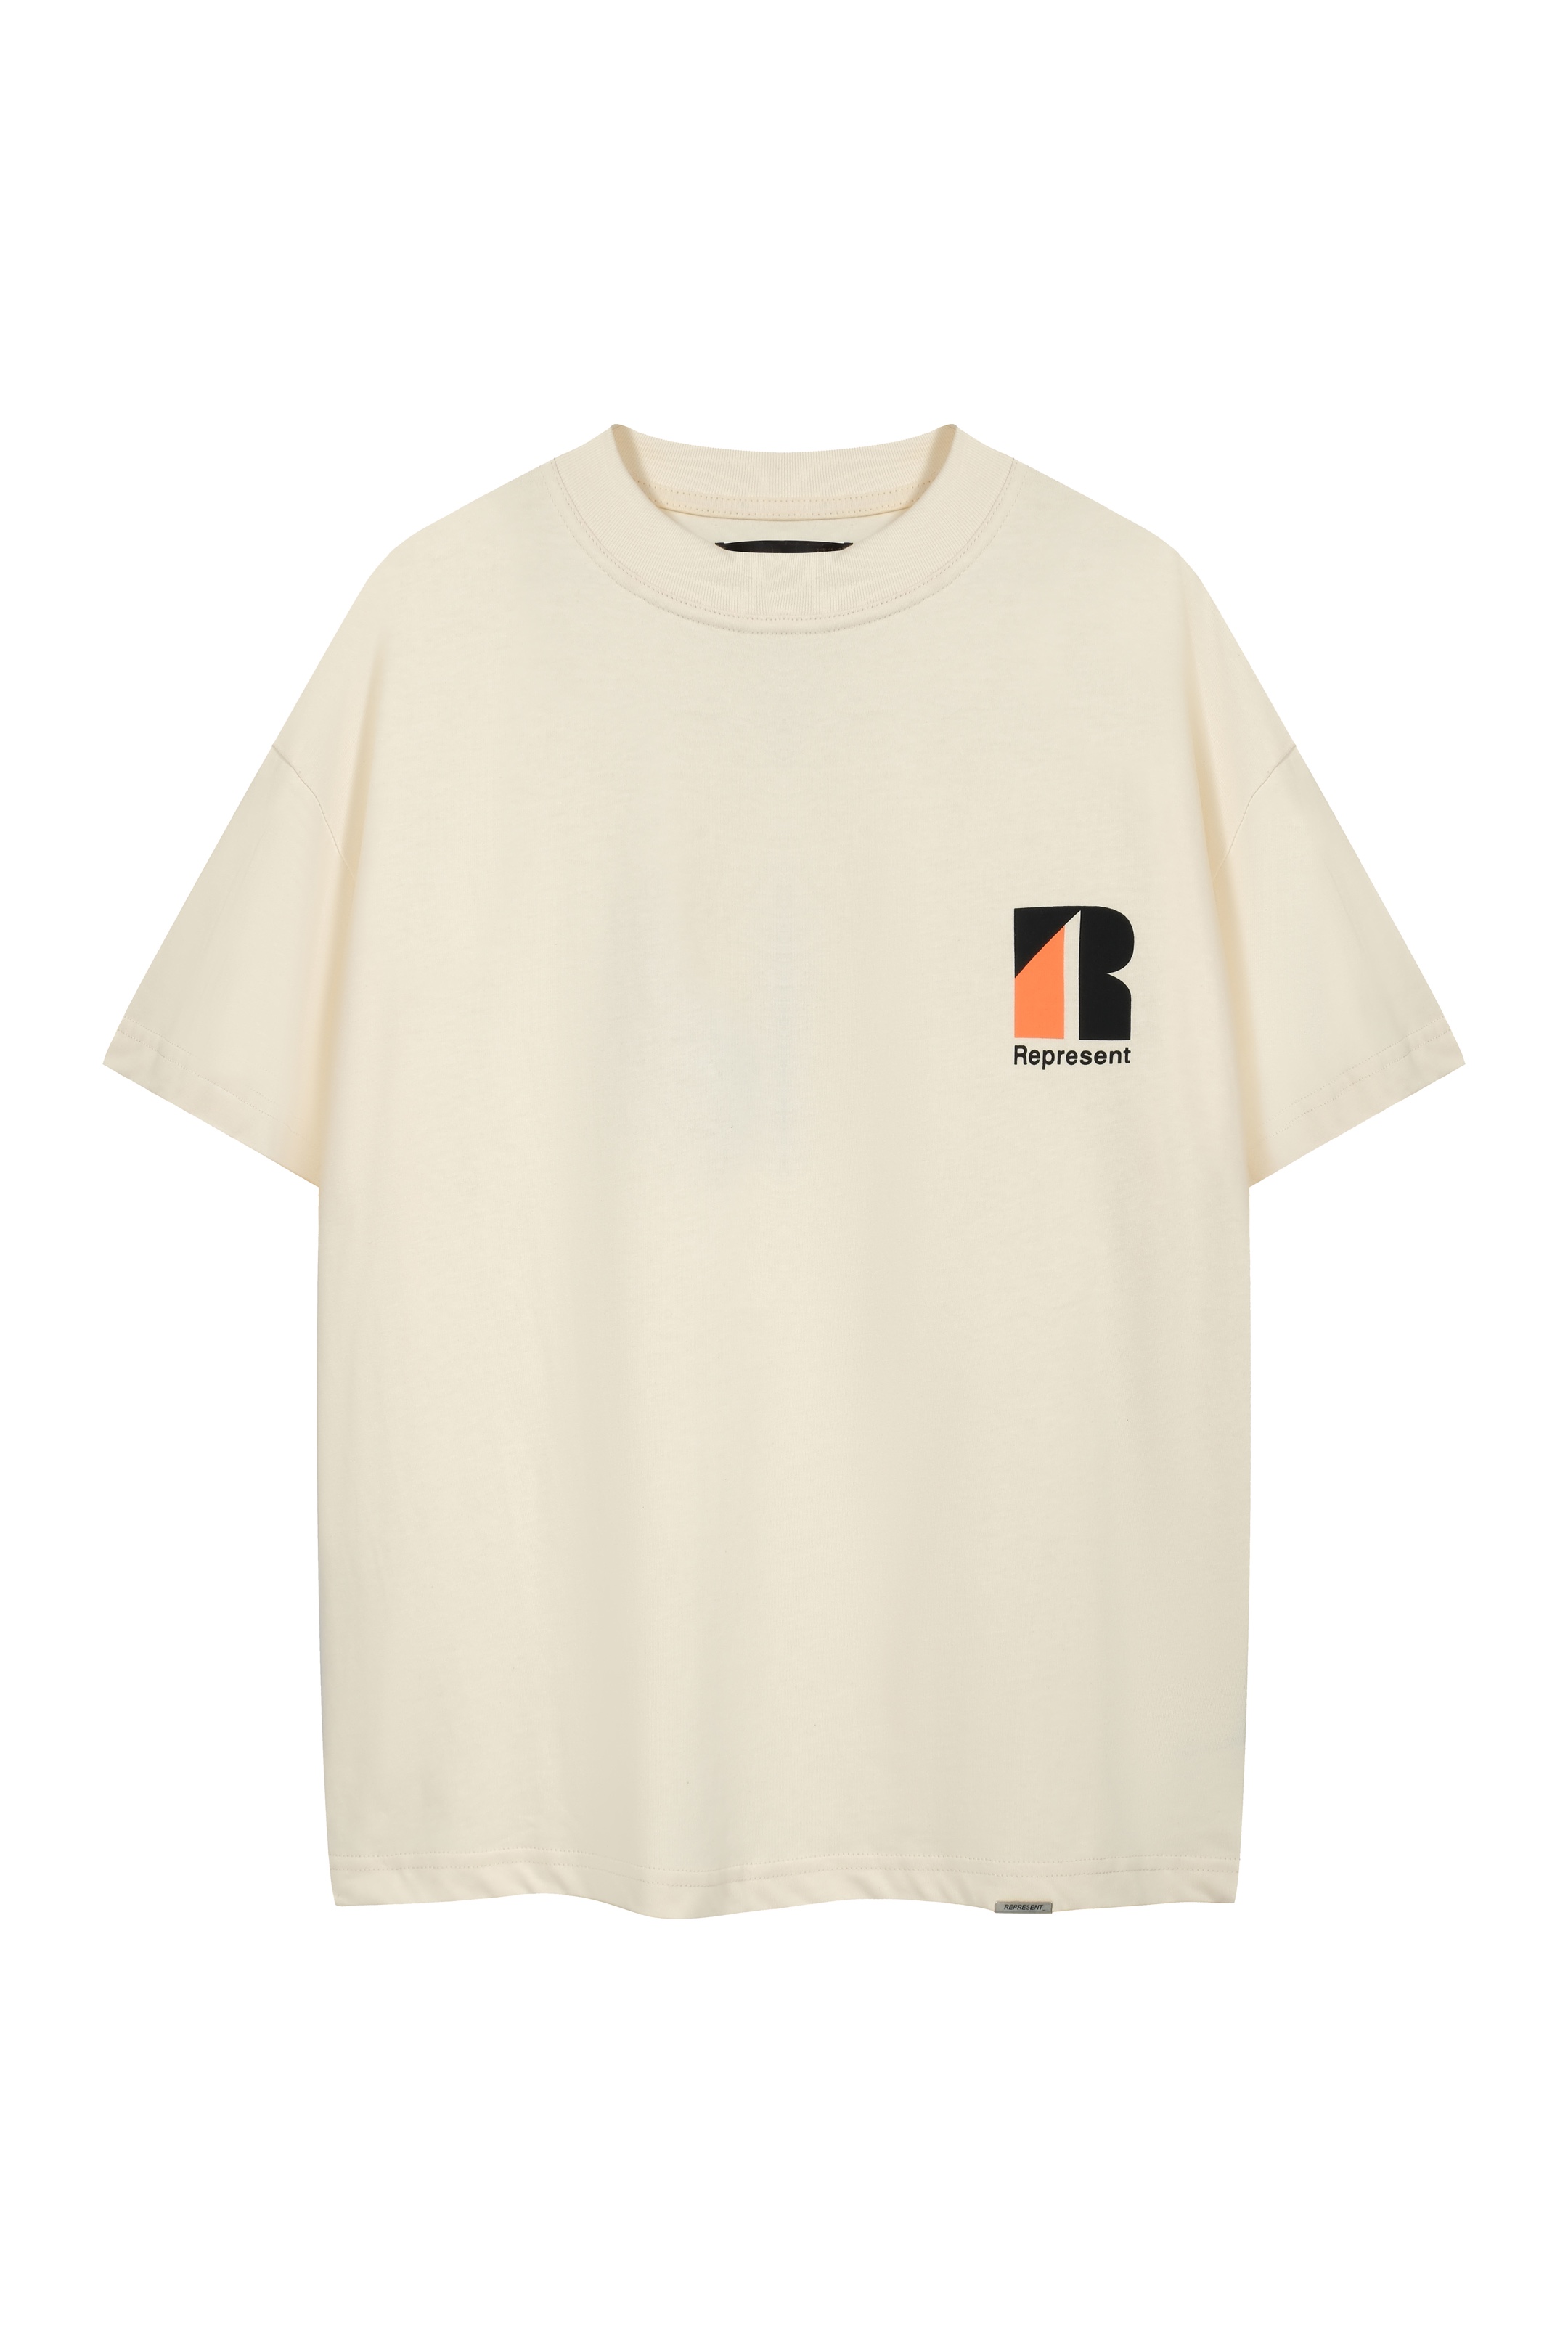 NEW夏の リプレゼント 公式スーパーコピー Tシャツ 夏新品 純綿トップス シンプル 杏色_1